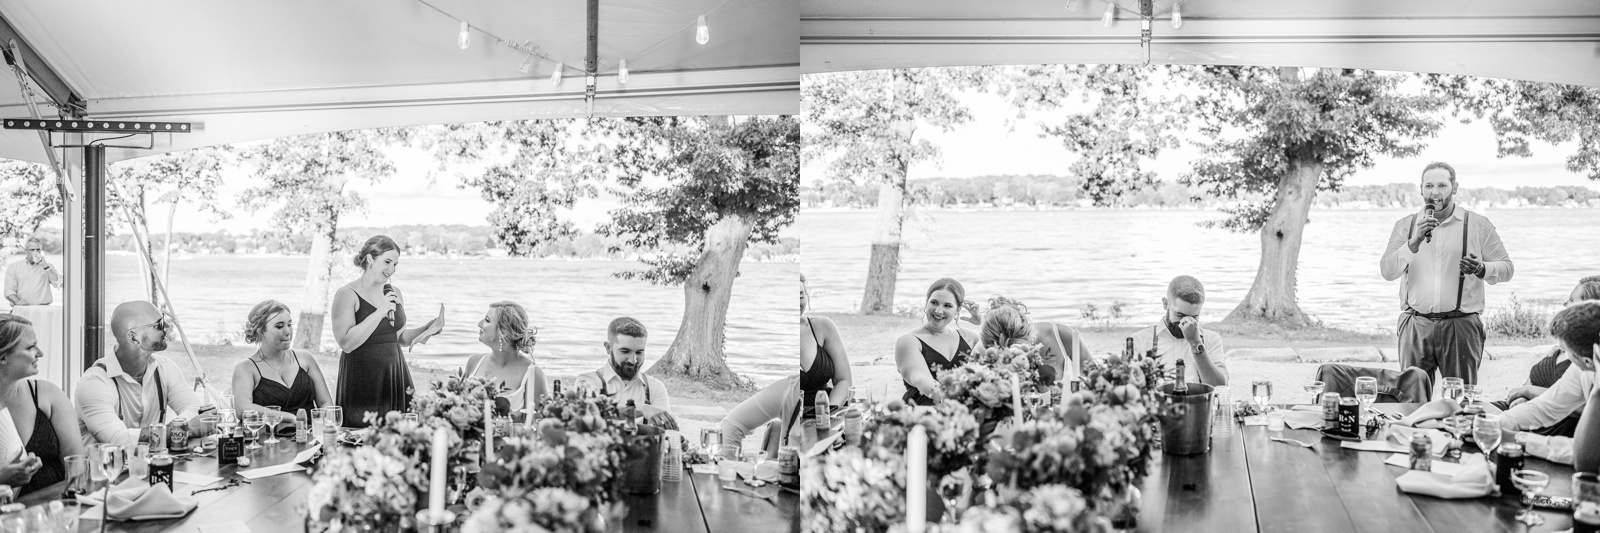 Romantic Garden Wedding at Tudor House at Portage Lake Akron Ohio_0056.jpg